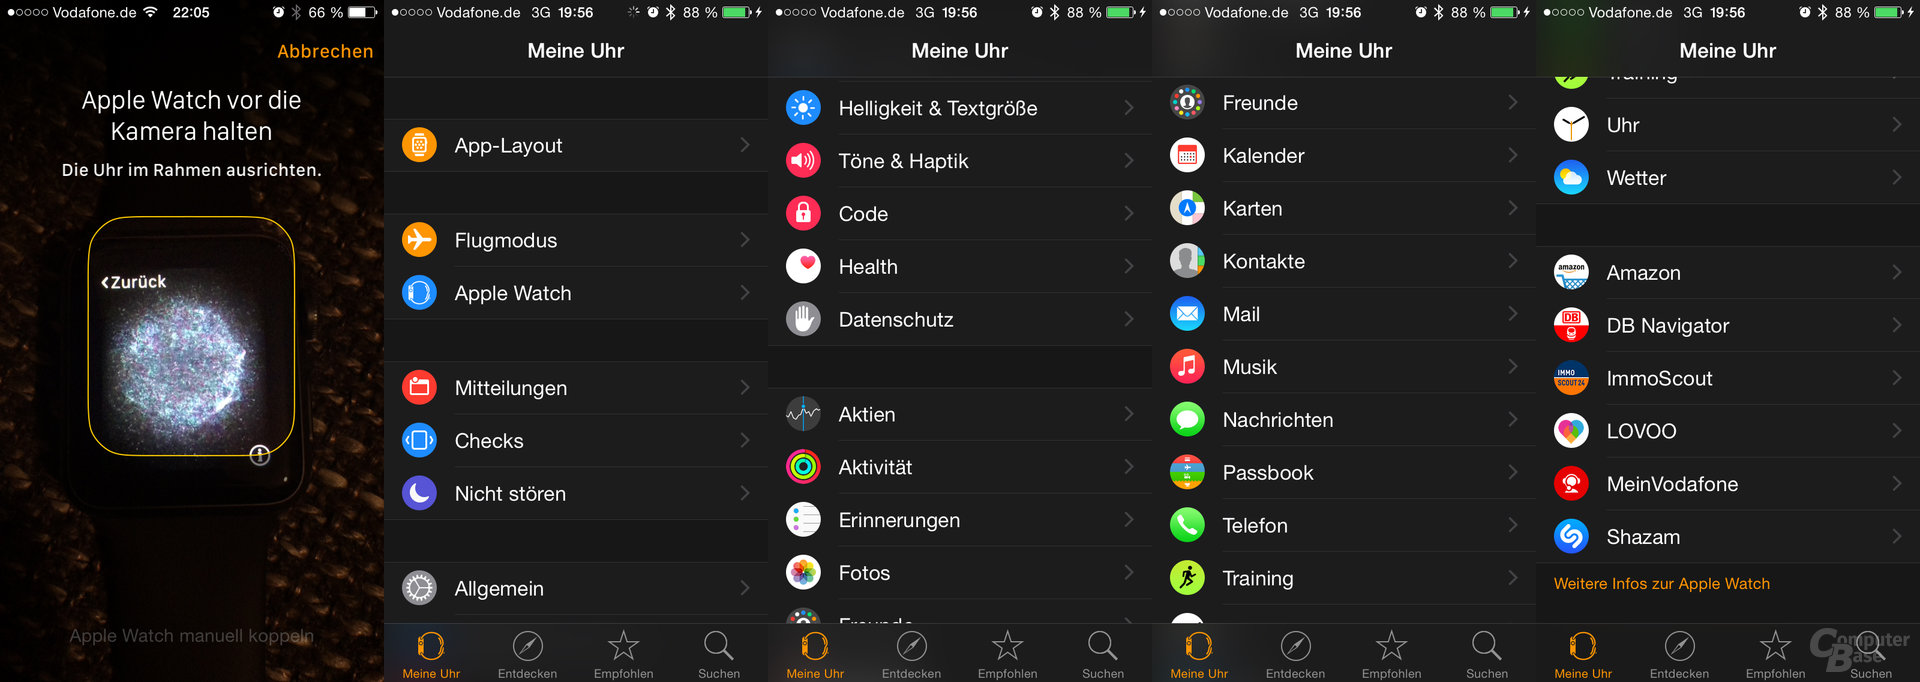 Apple Watch – Kopplung und App